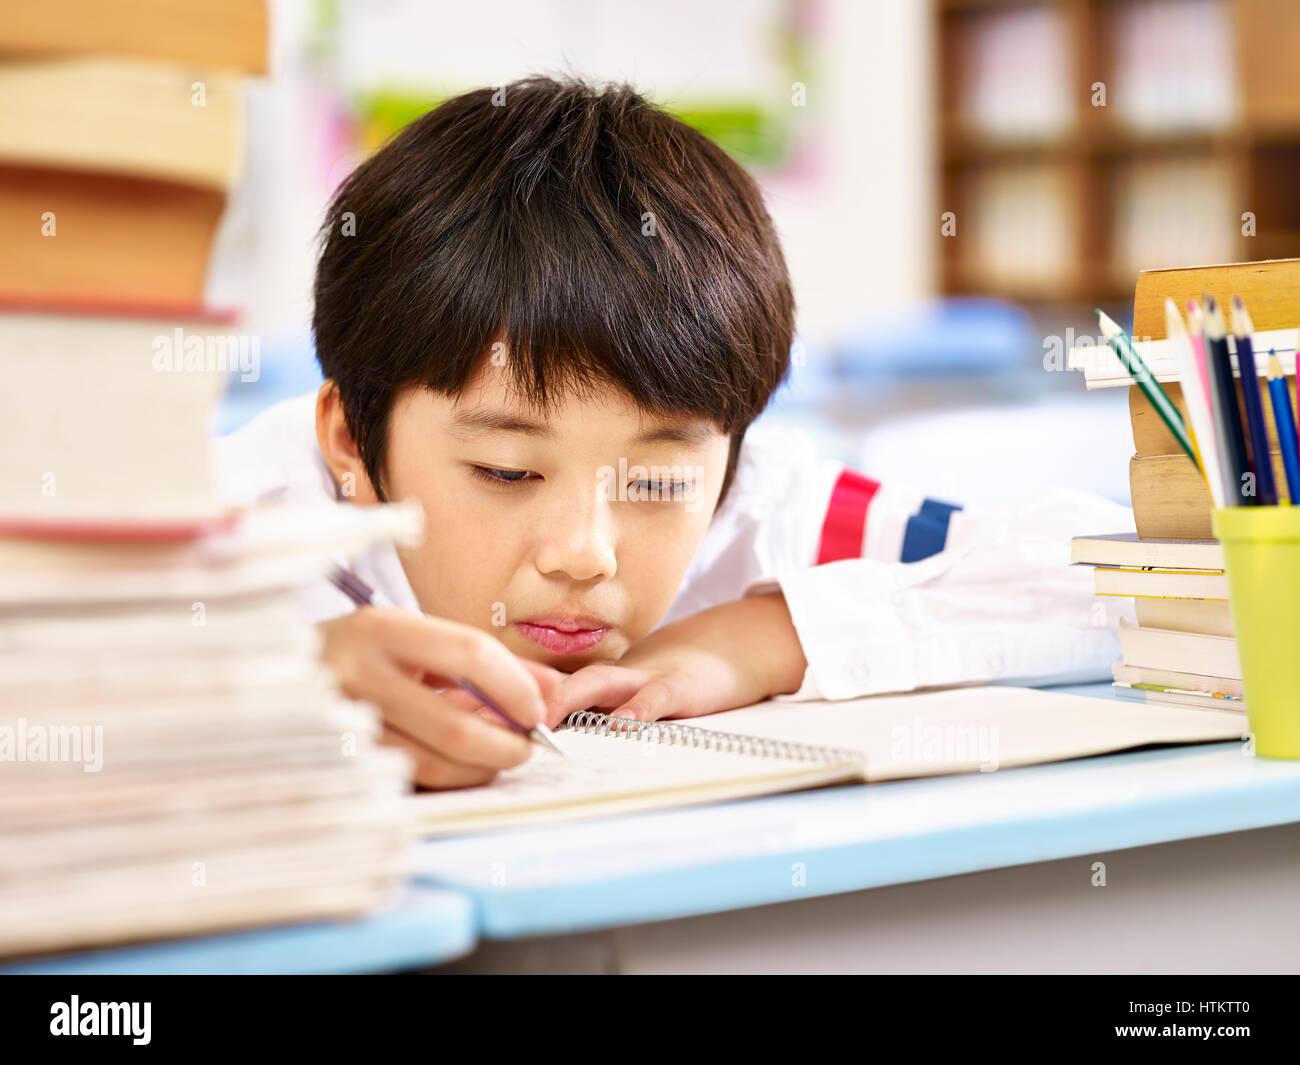 Stanco ed annoiato asiatici scuola elementare boy facendo i compiti in classe, testa in appoggio sulla scrivania. Foto Stock